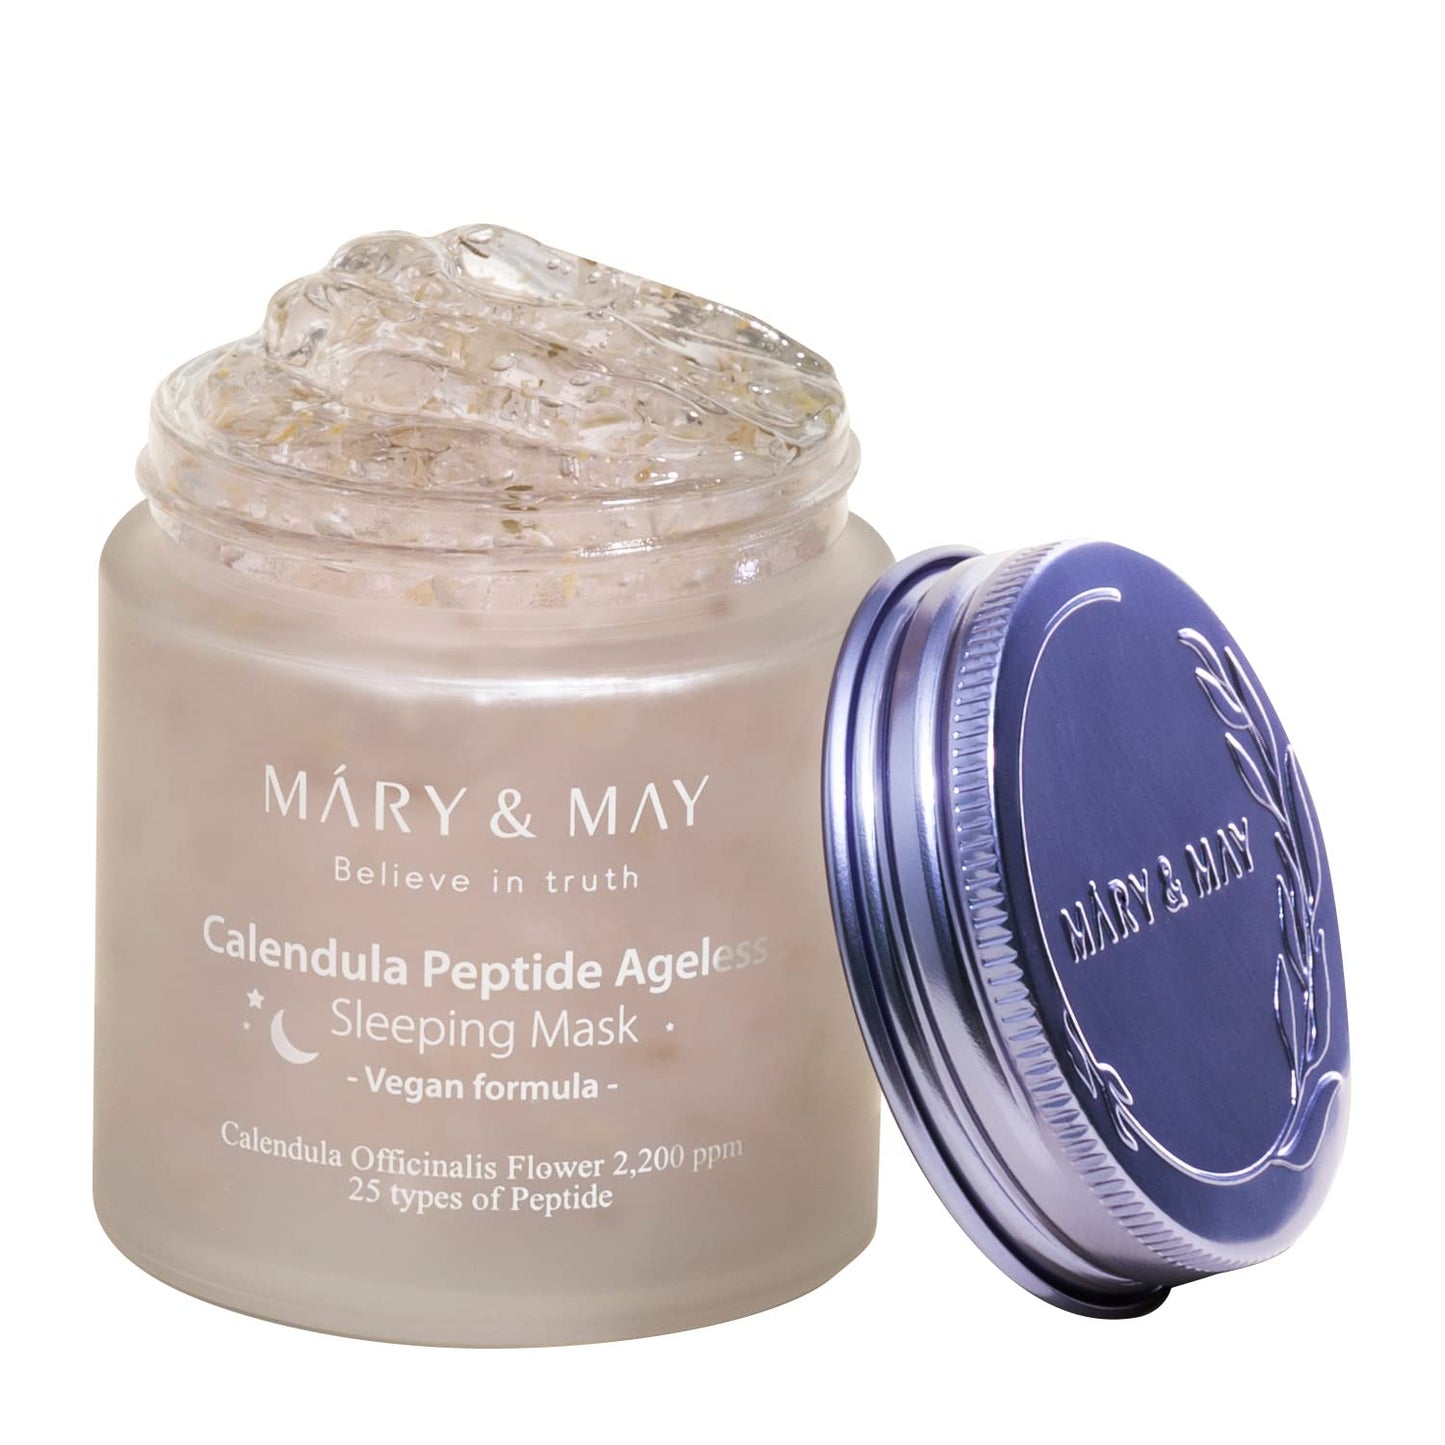 Mary & May Calendula Peptide Ageless Sleeping Mask 110g